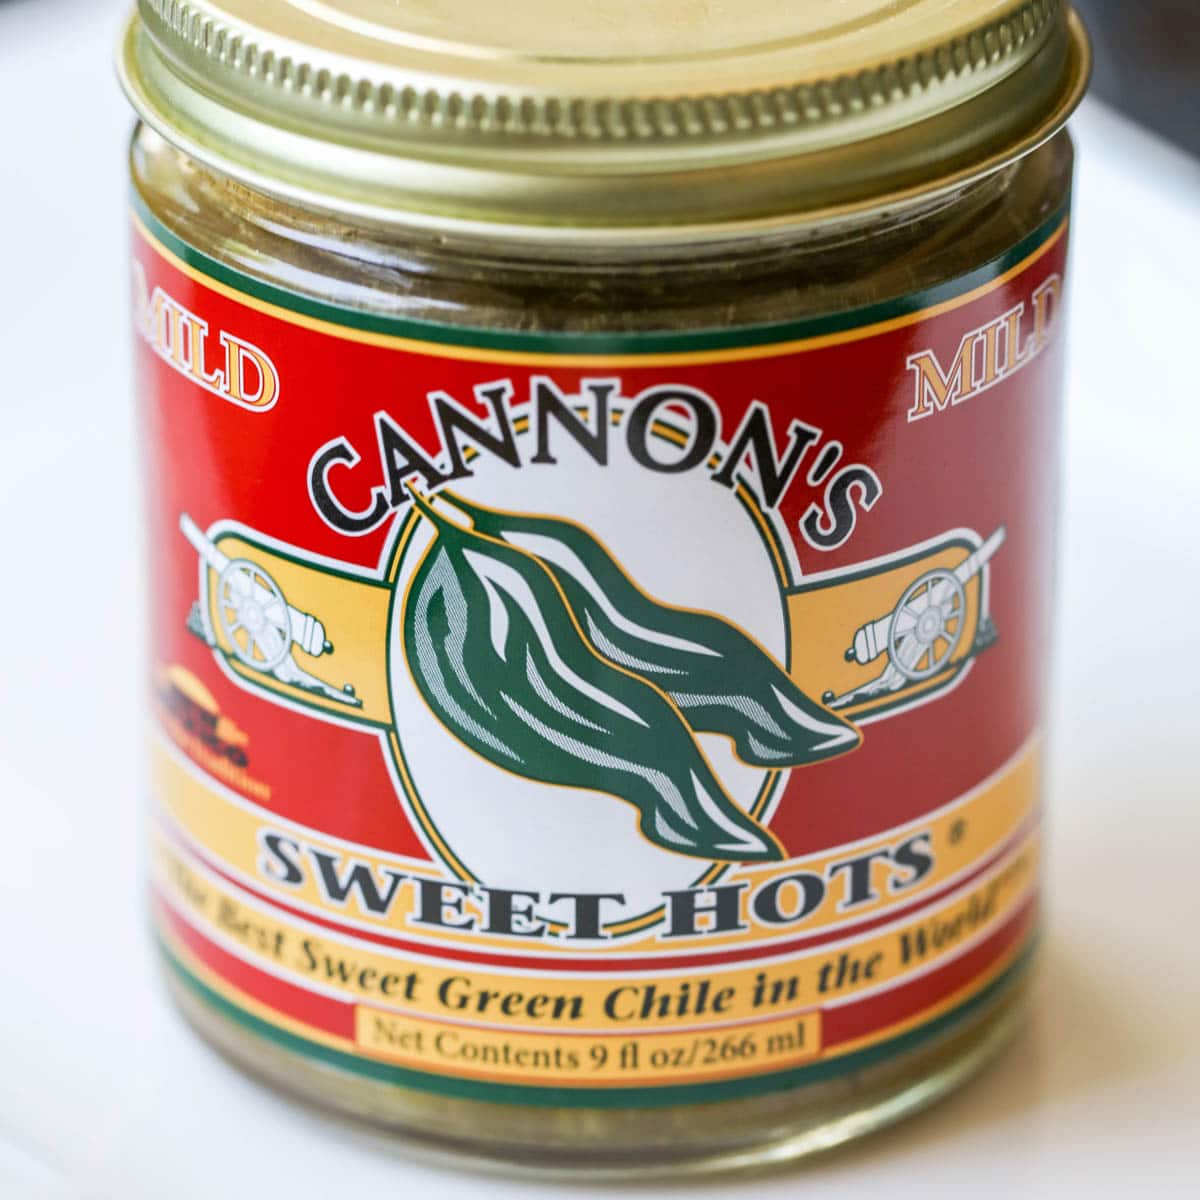 坎农的甜绿辣椒罐头